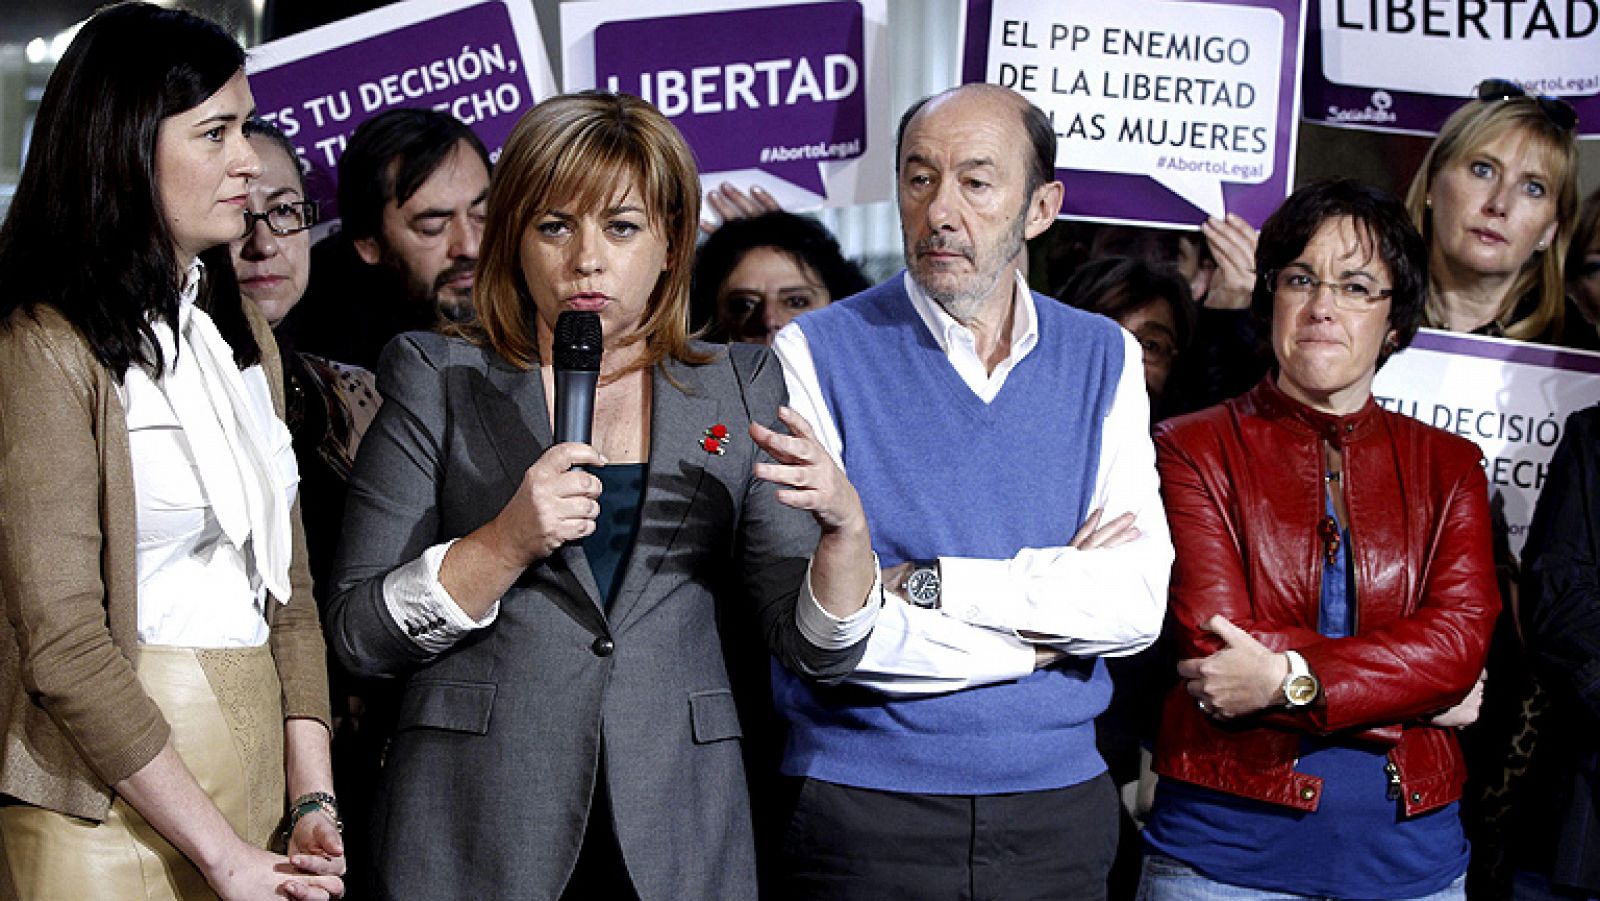 El PSOE: quien tenga recursos abortará y sin ellos irá a la clandestinidad